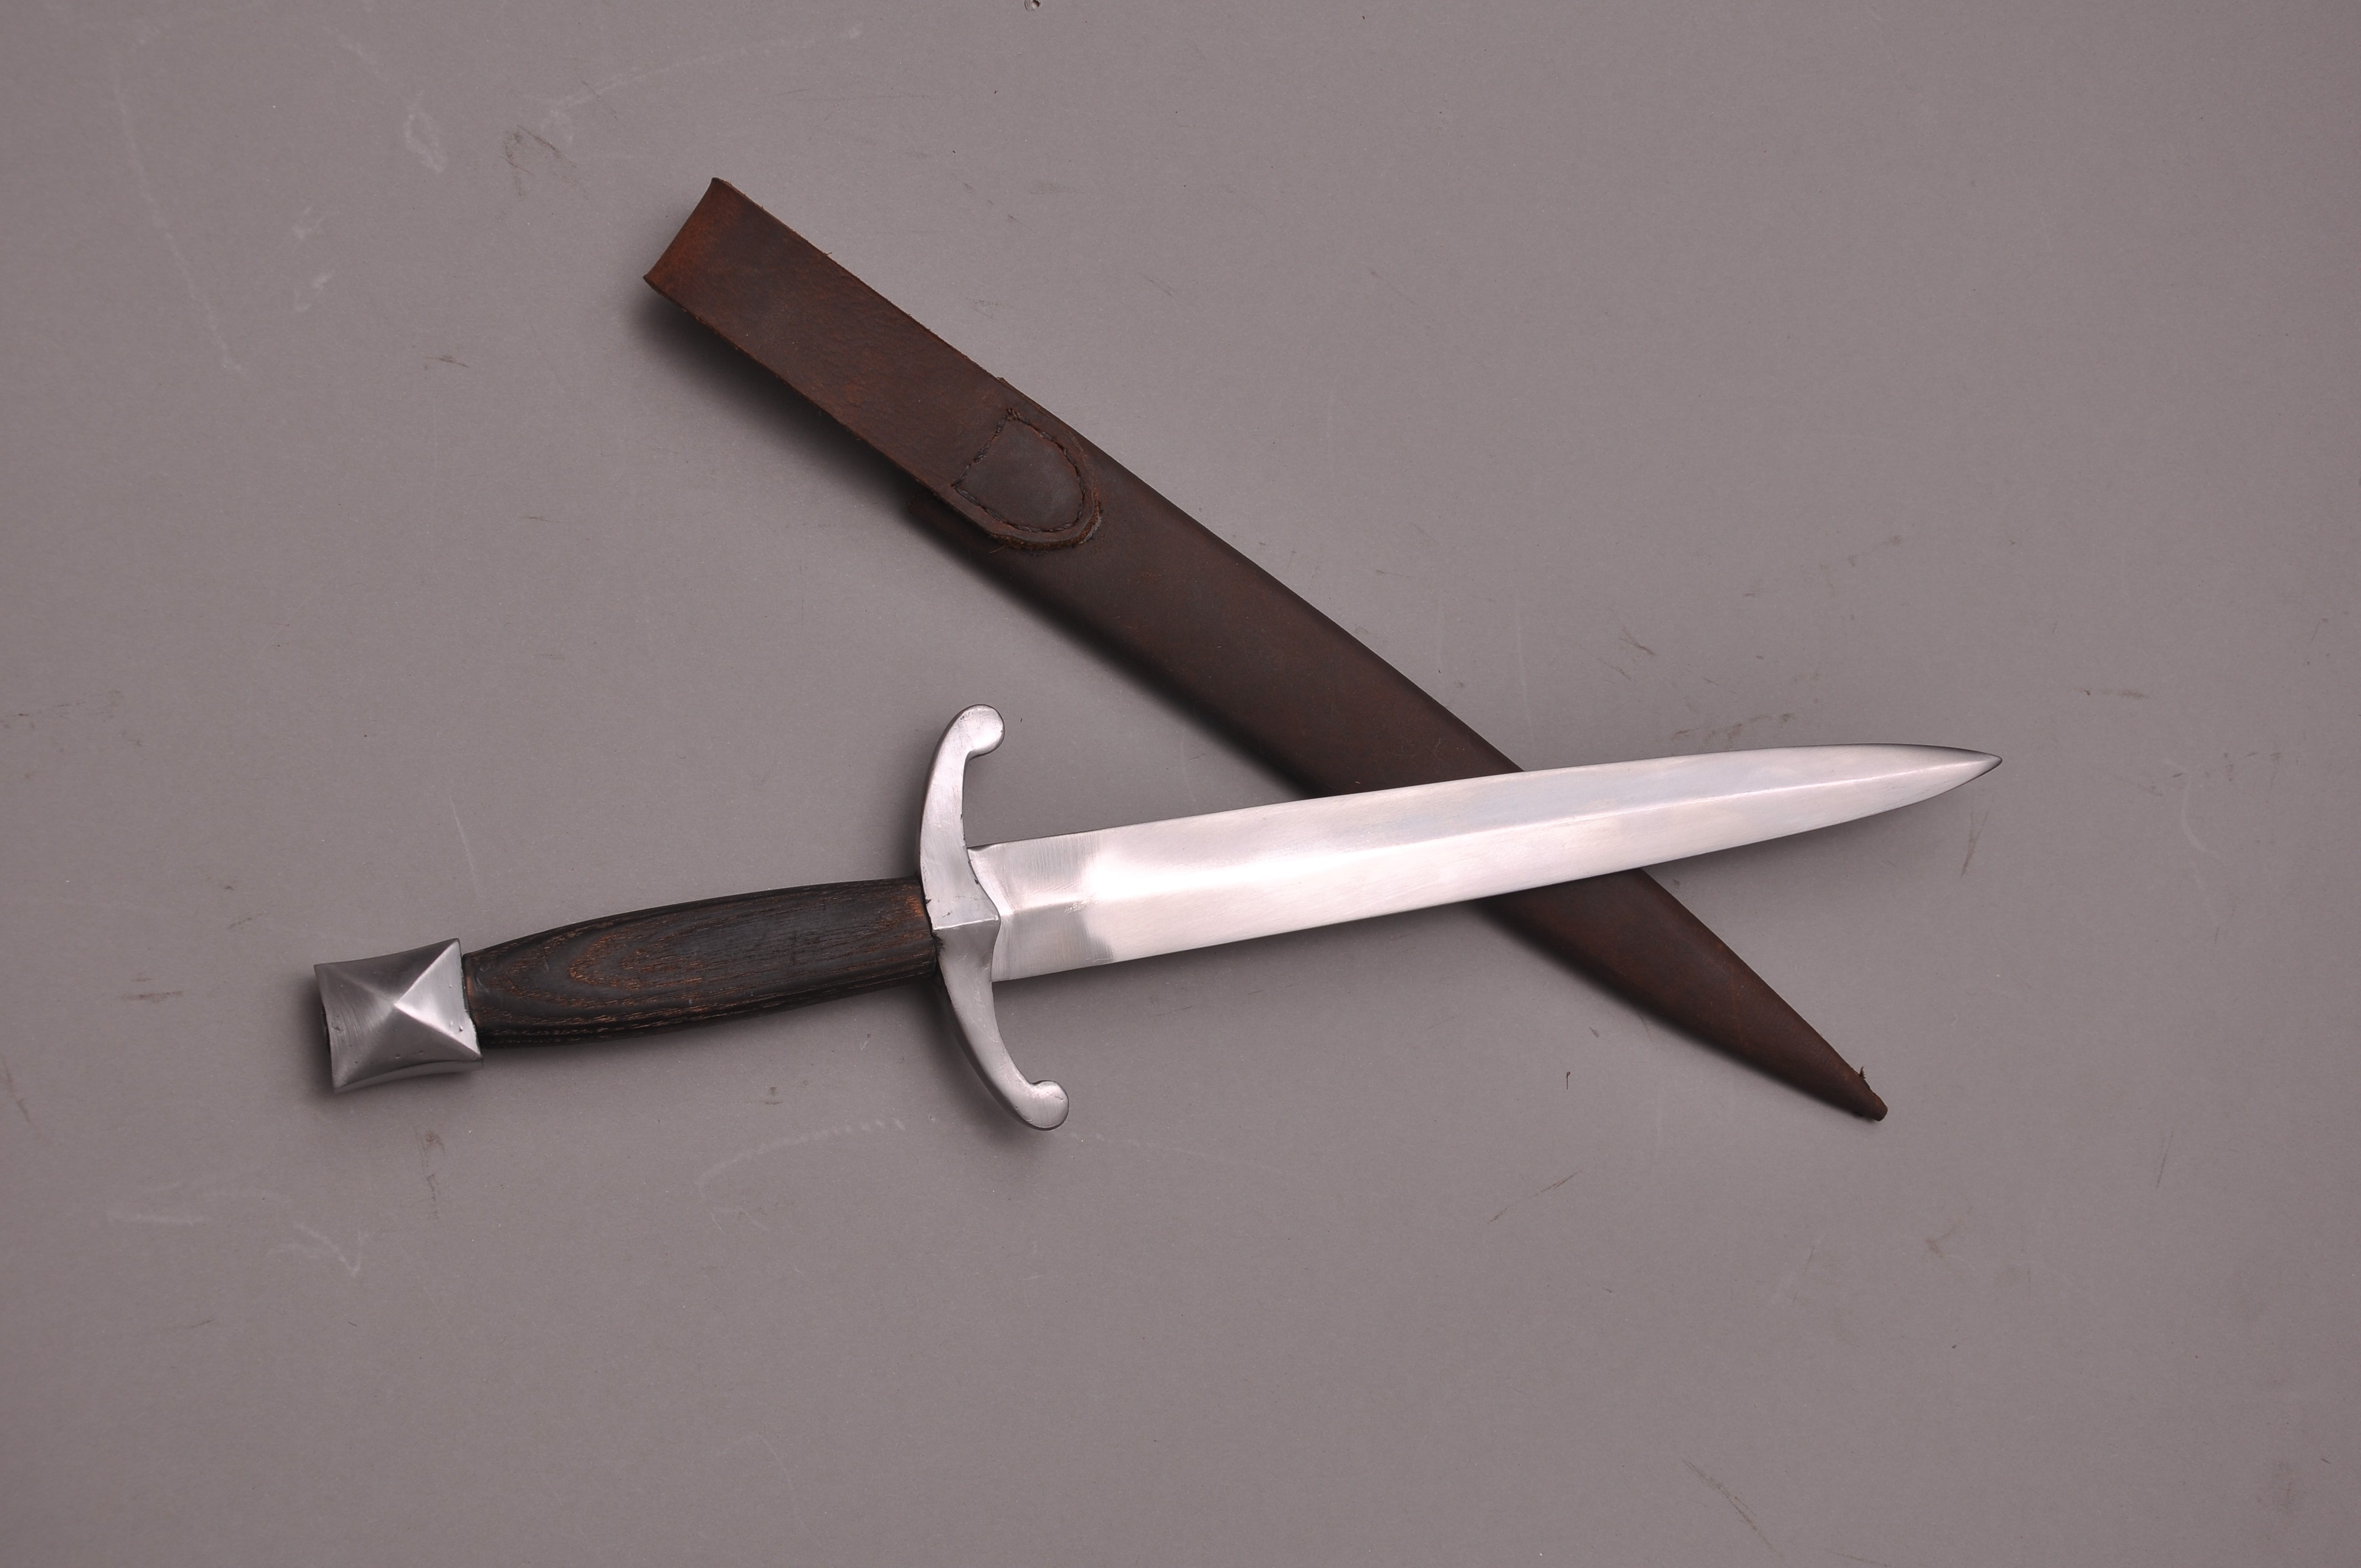 Chevalier dagger - 15th century